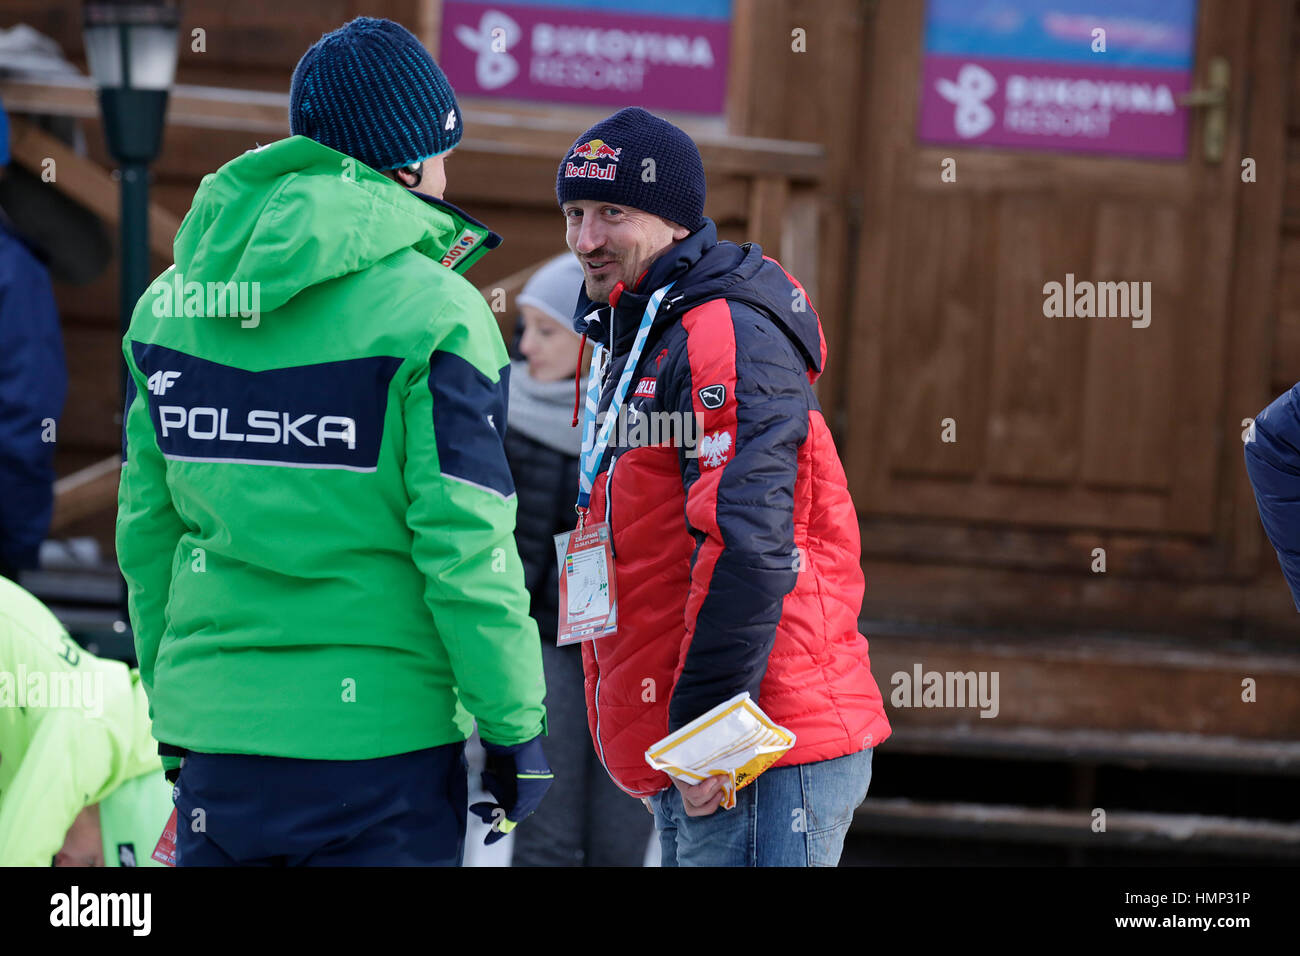 ZAKOPANE, POLAND - JANUARY 24, 2016: FIS Ski Jumping World Cup in Zakopane o/p ADAM MALYSZ Stock Photo